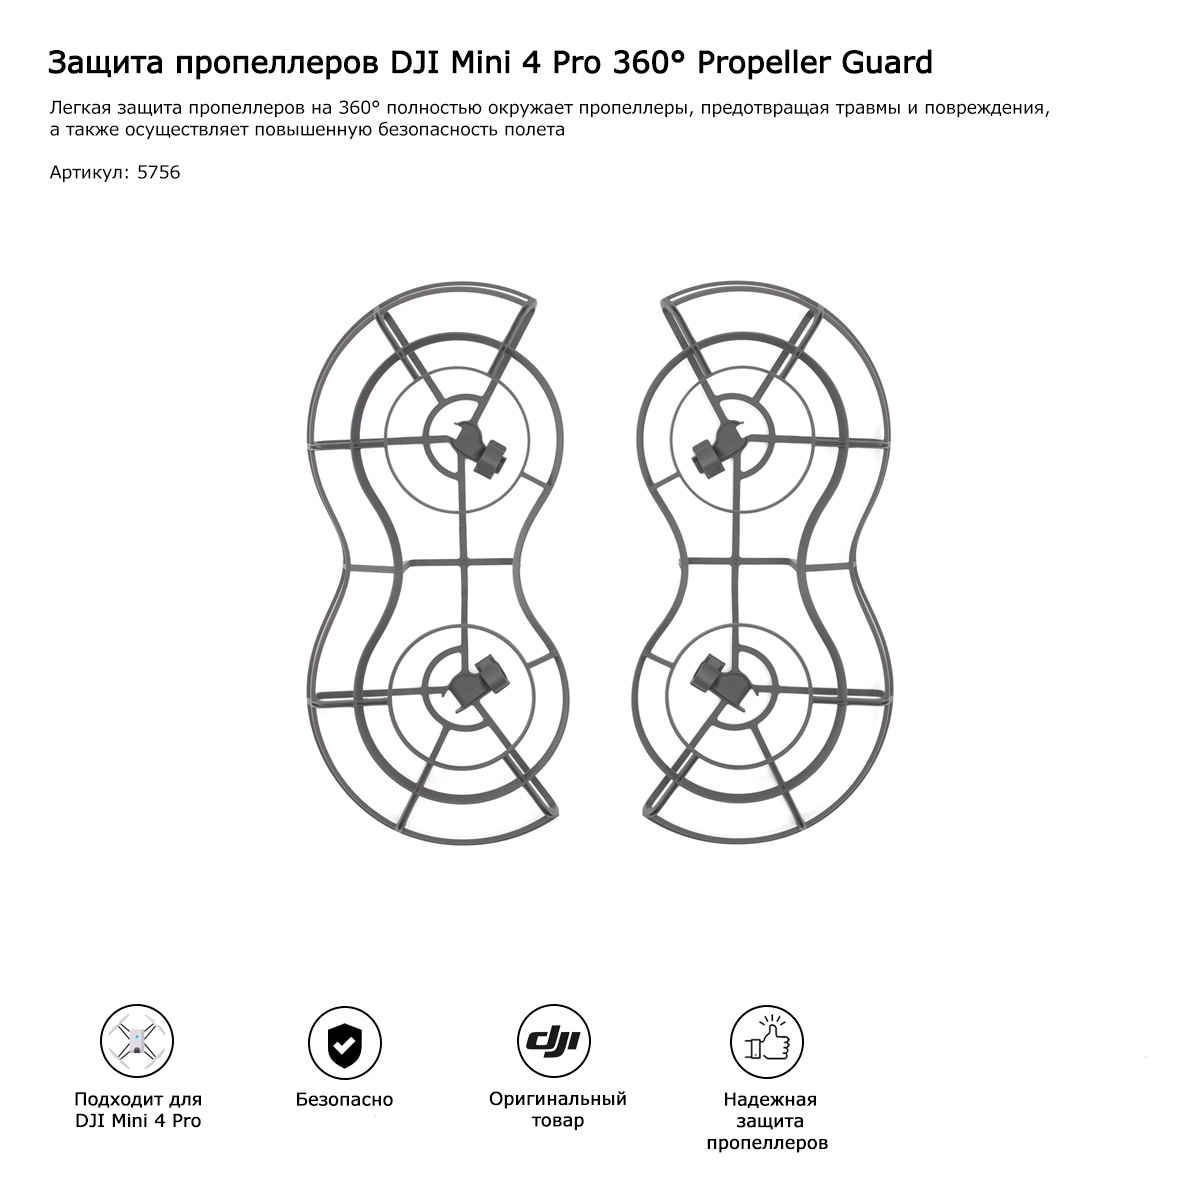 Buy DJI Mini 4 Pro 360 Propeller Guard